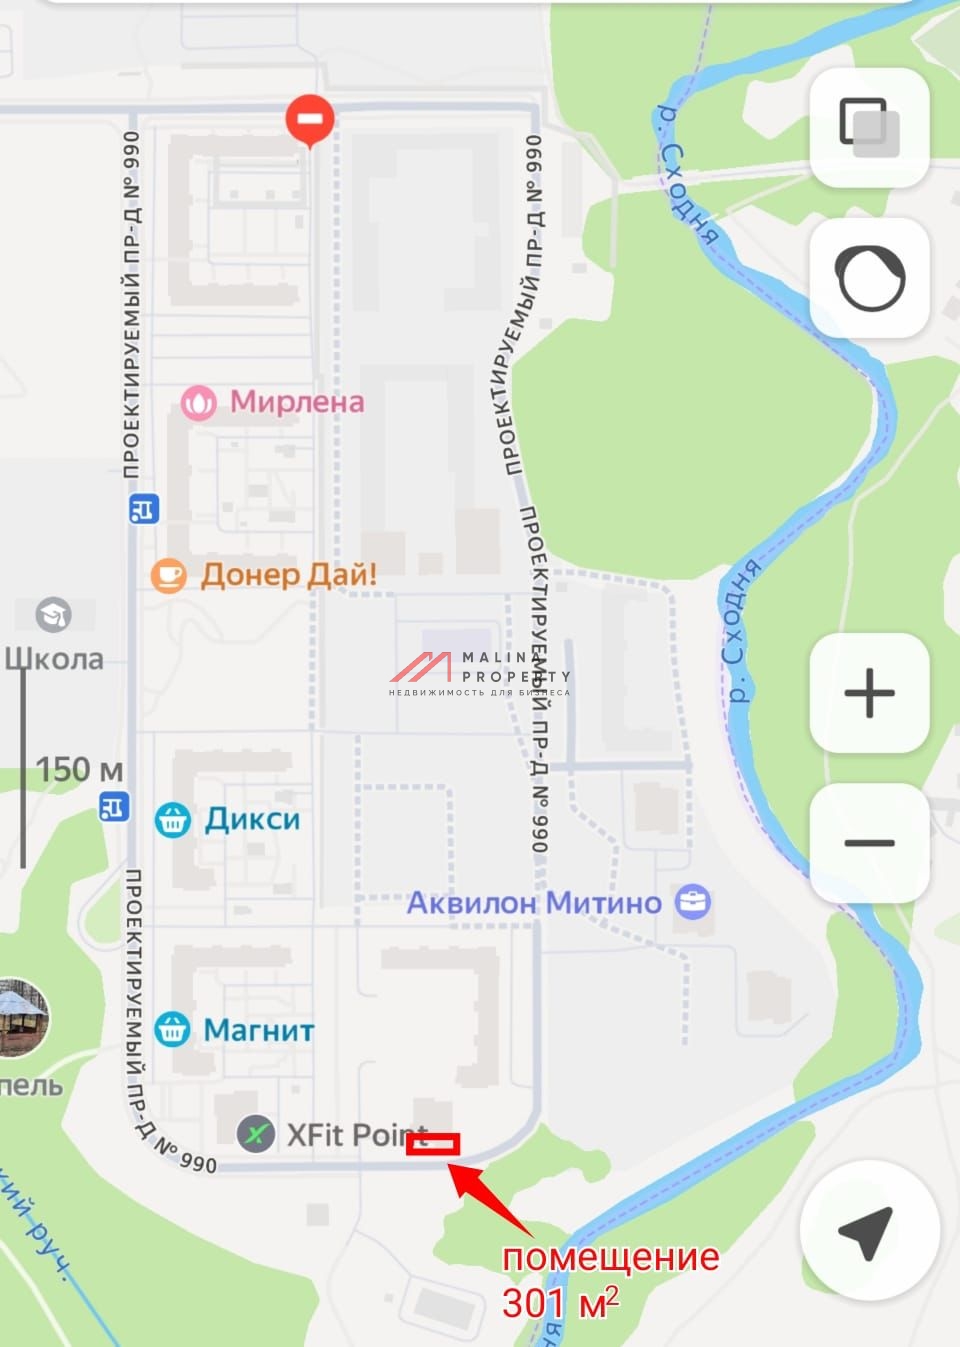 Продажа помещения с сетевым магазином "Пятерочка" в ЖК "Митинский лес"